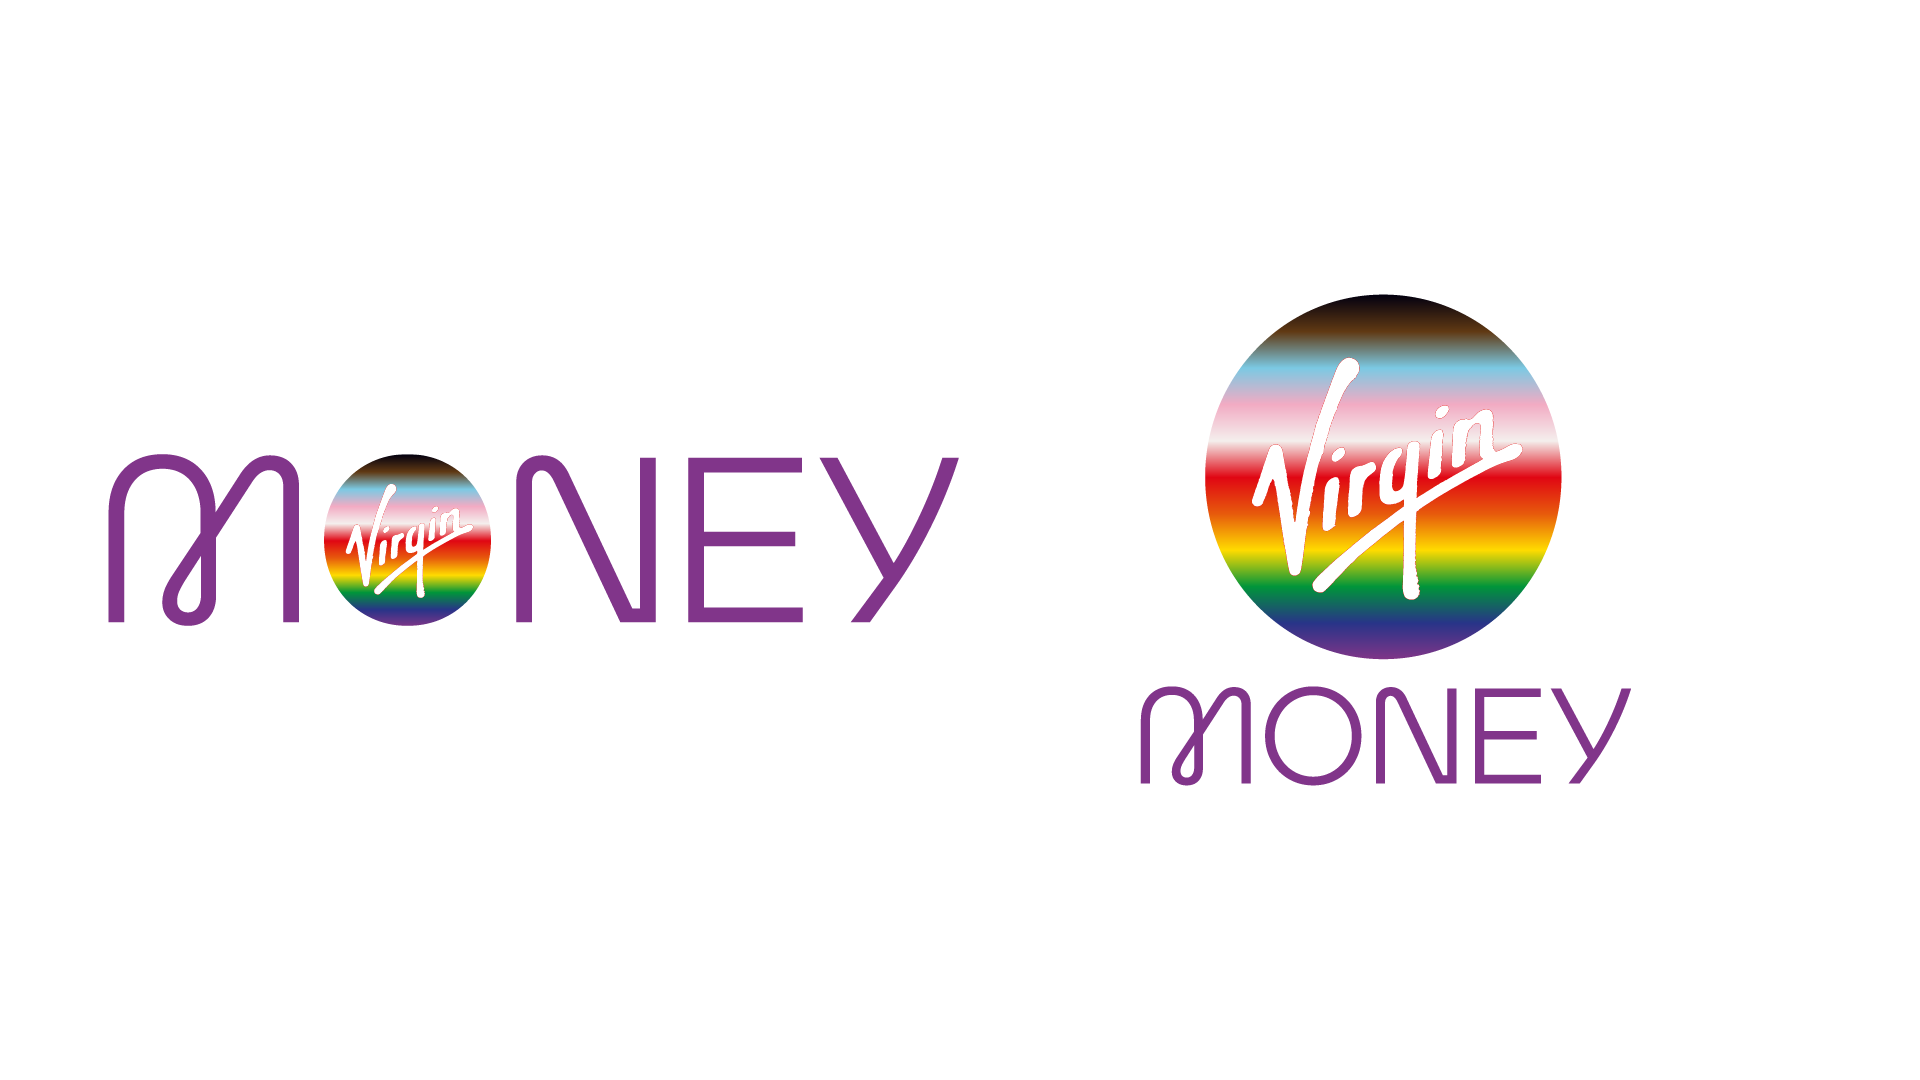 Virgin Money logo for Pride campaign